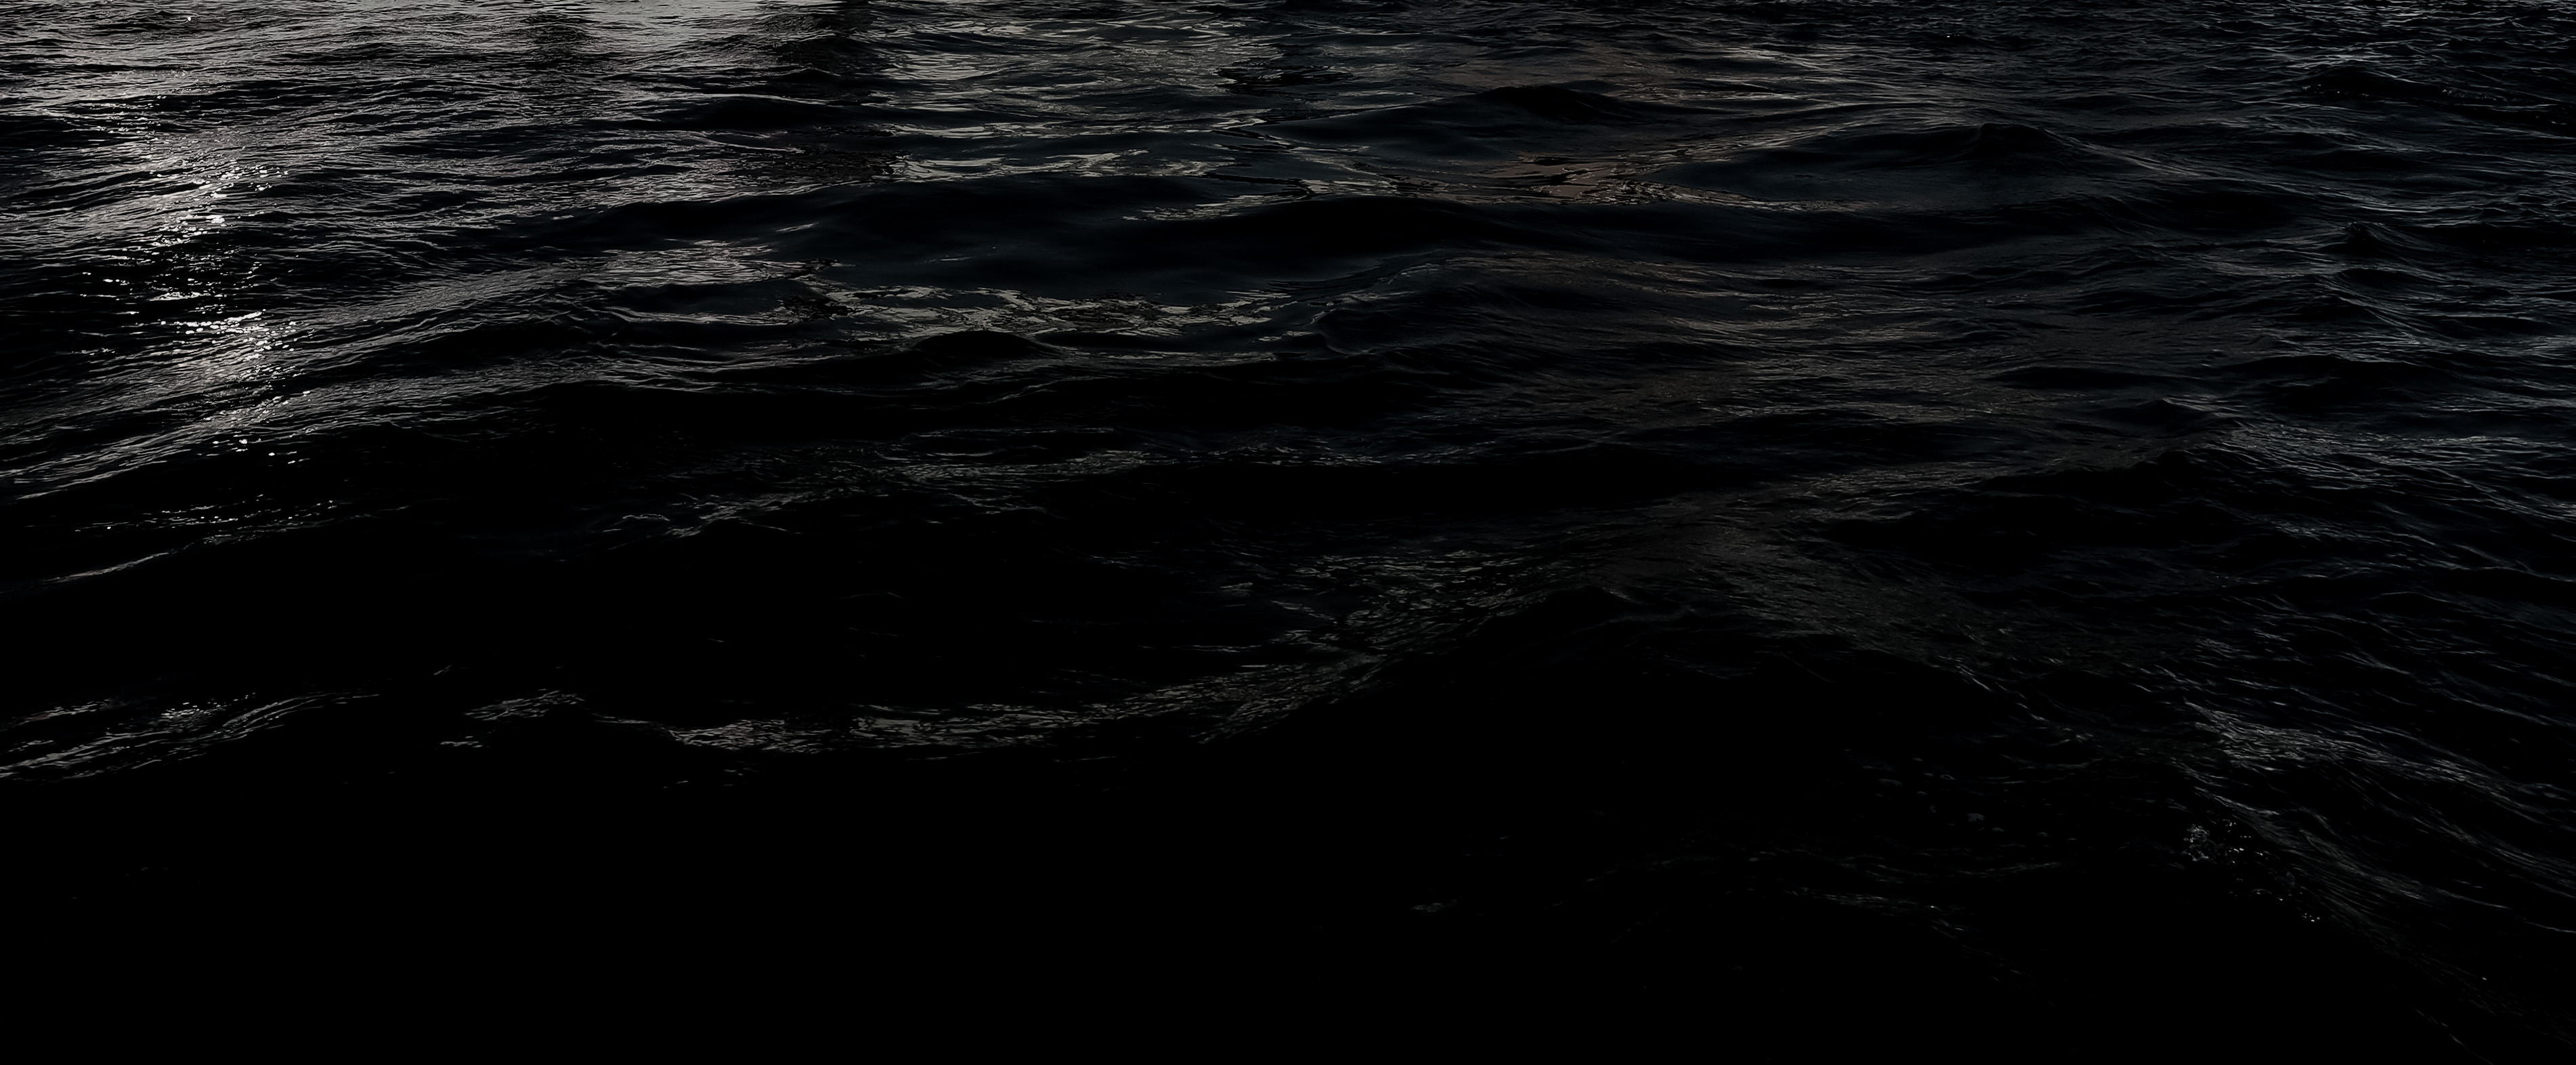 Grunge Dark Black Water Texture Background